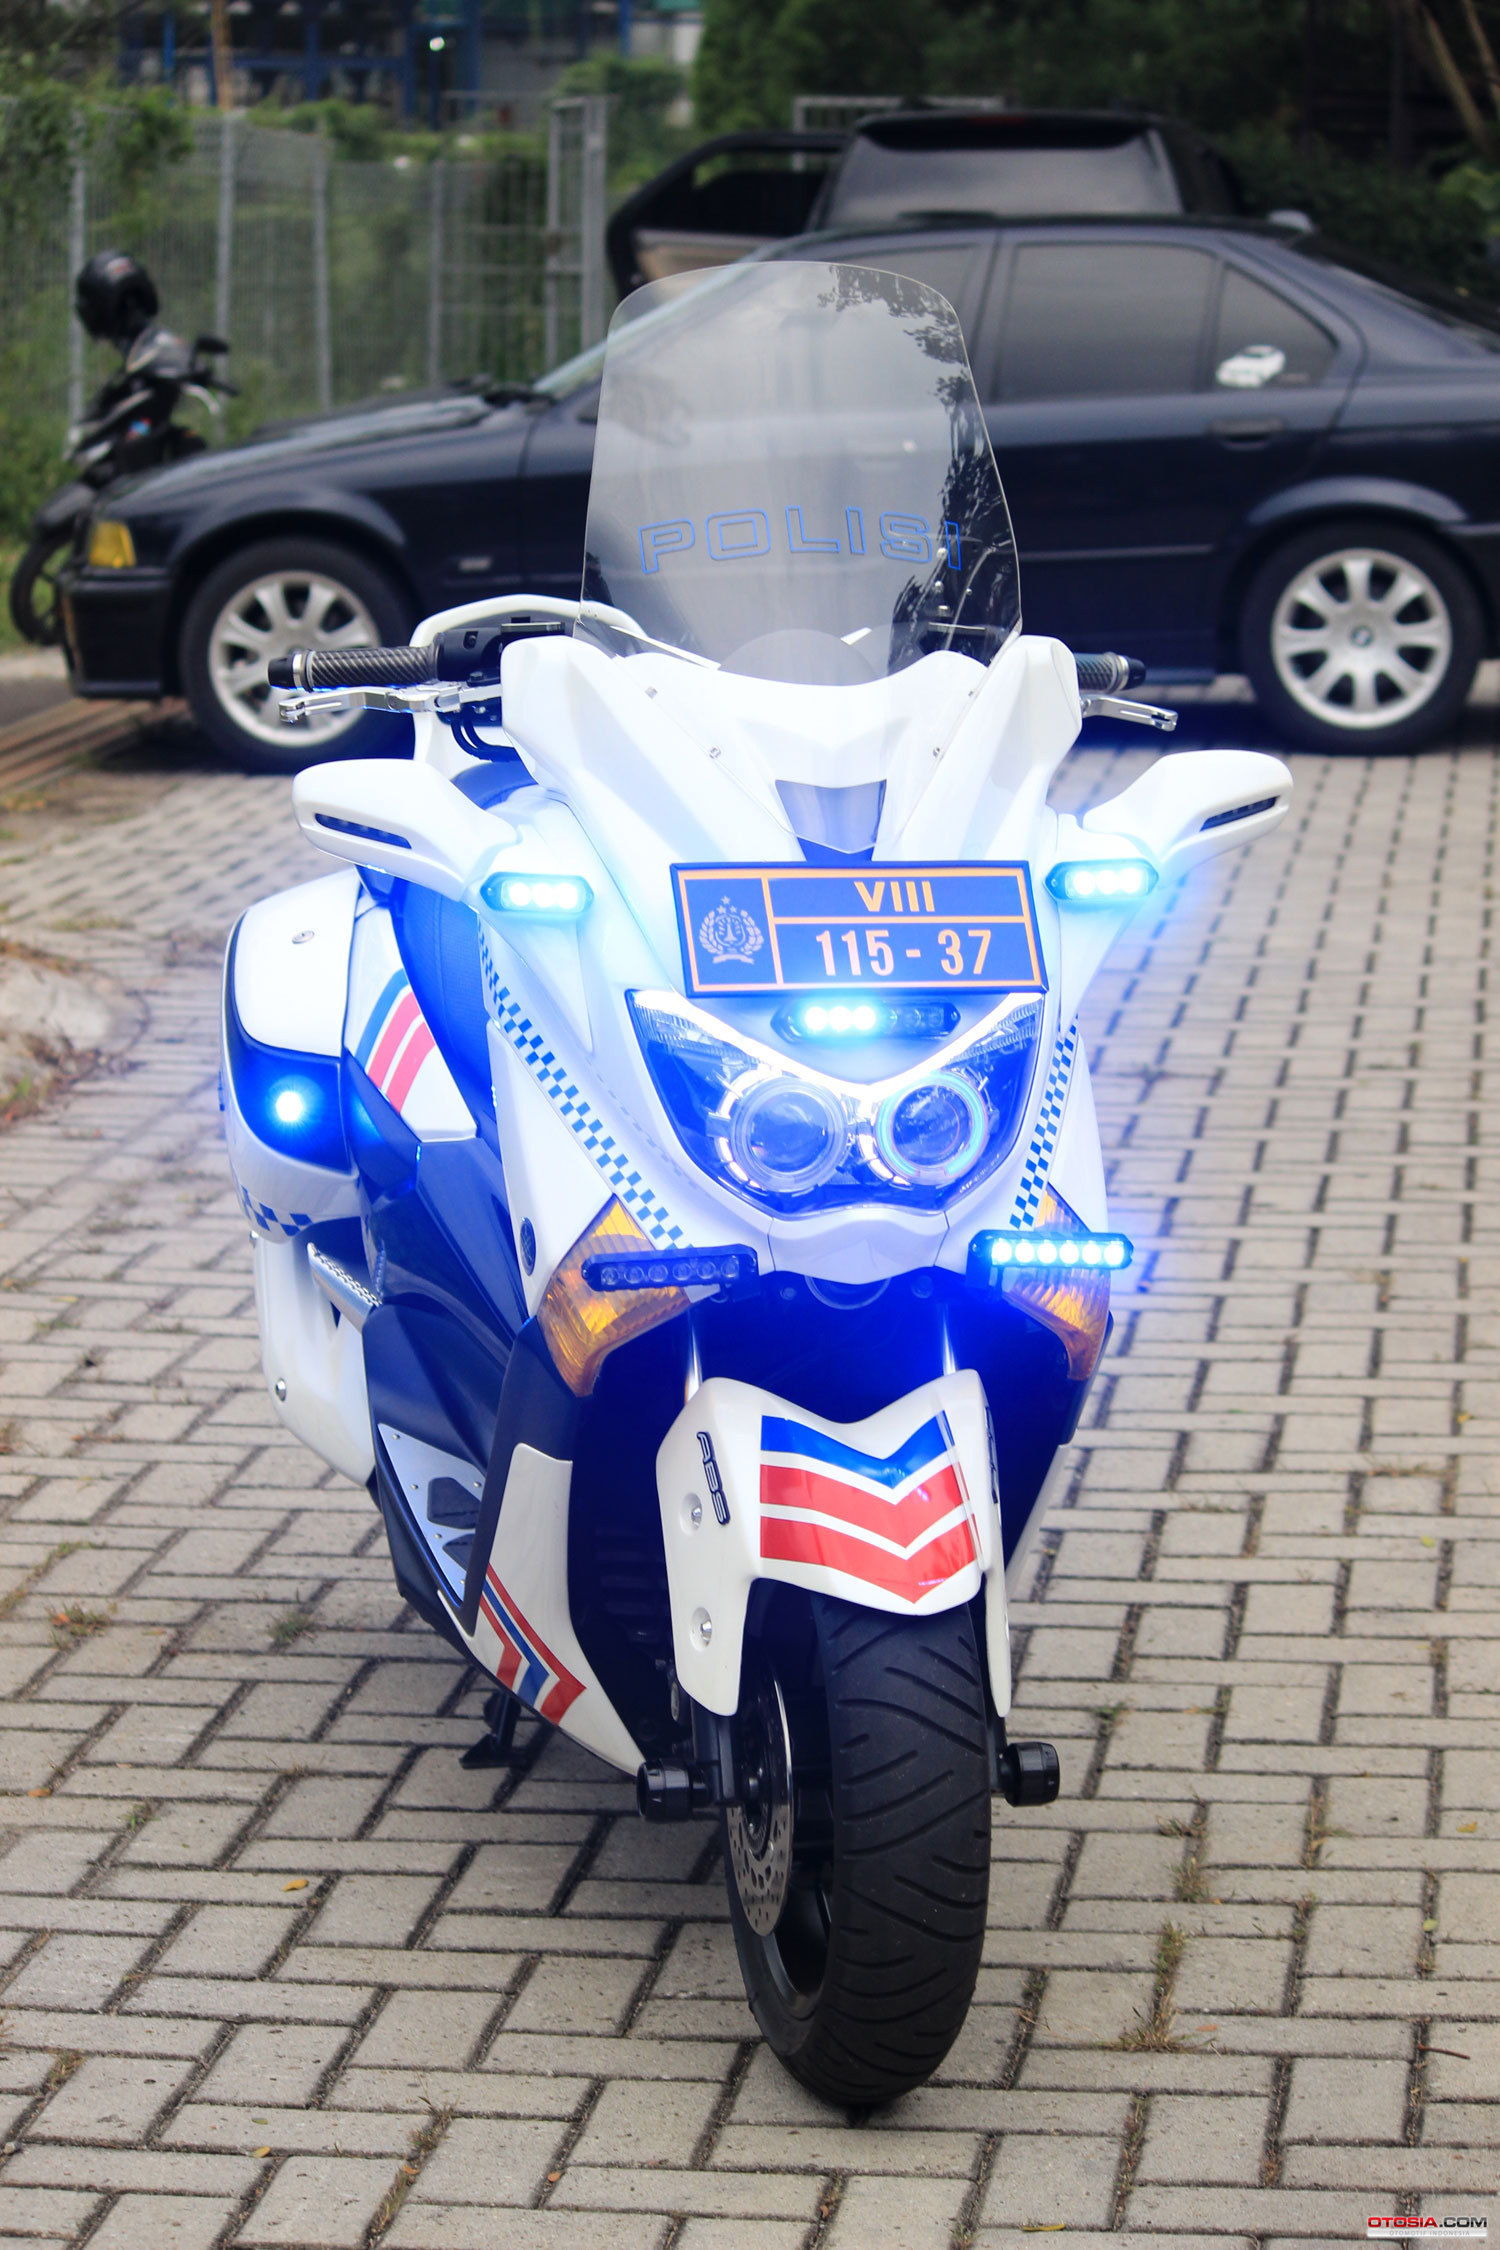 Yamaha N Max Modifikasi Motor Polisi Otosiacom